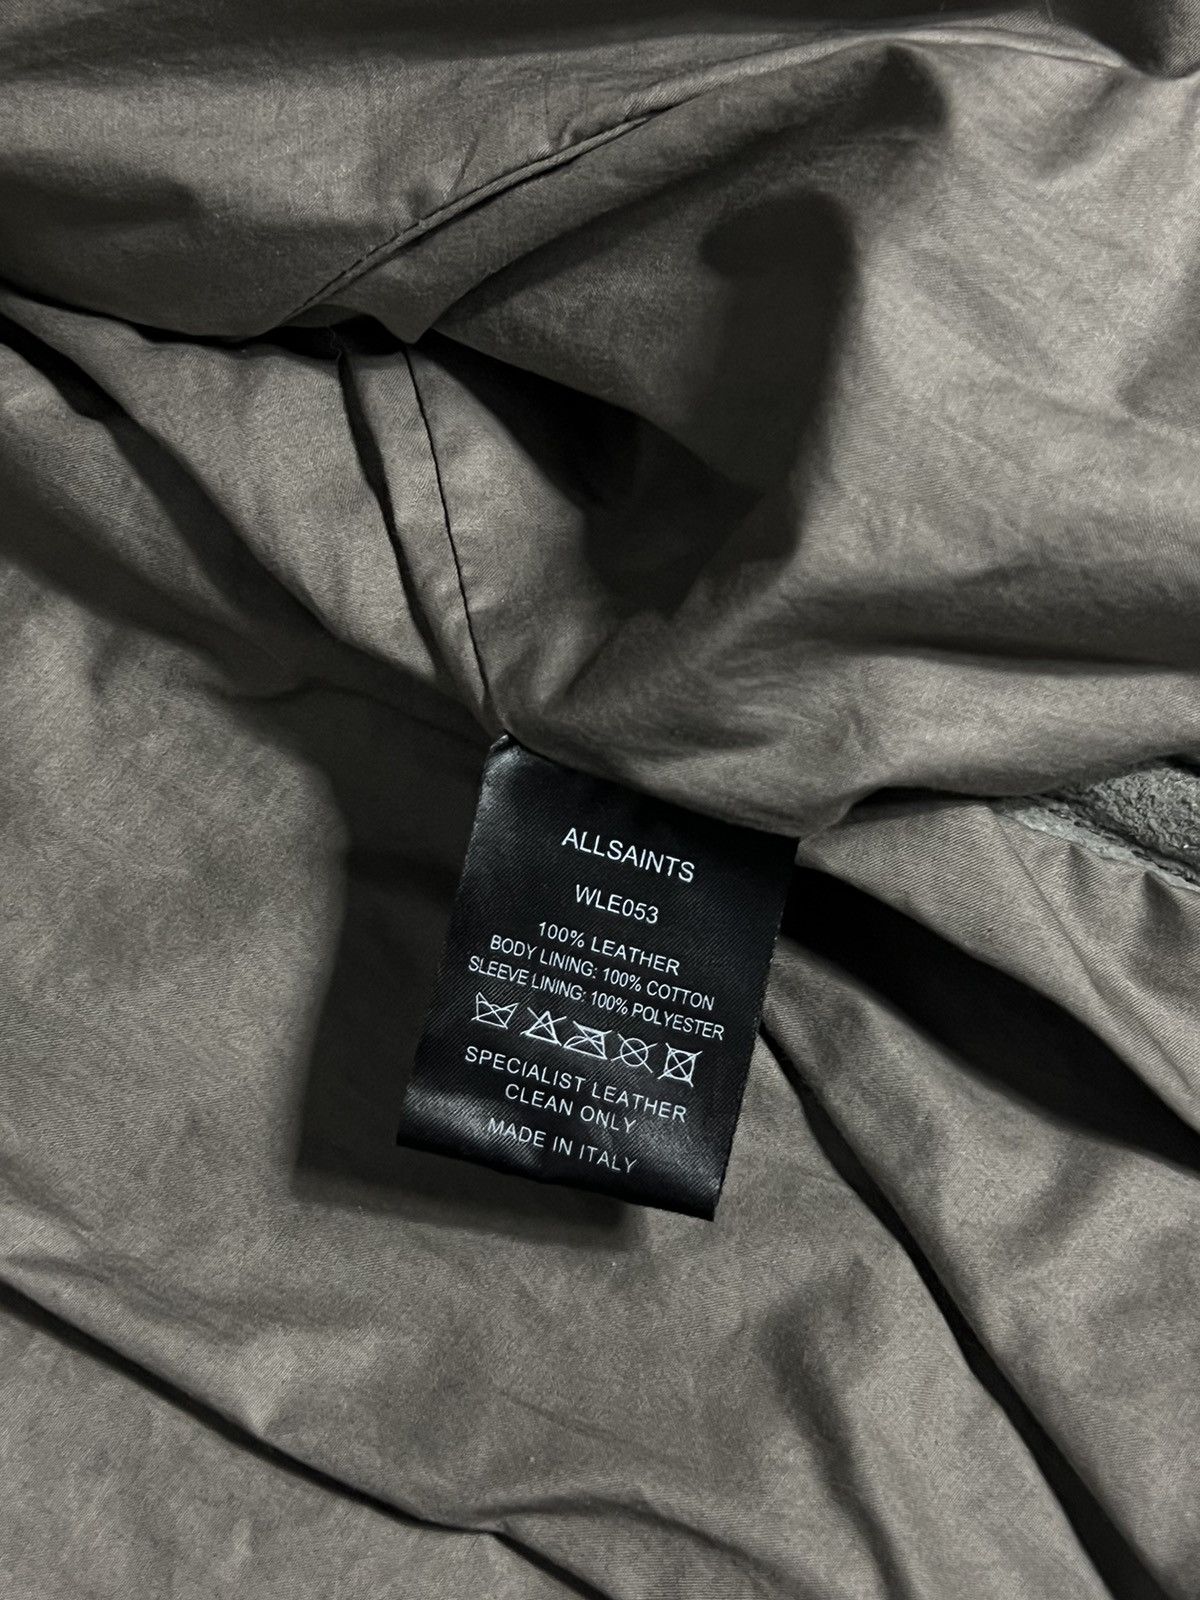 Allsaints Rare AllSaints Biker Leather Jacket with Studs Archive SS09 Size S / US 4 / IT 40 - 4 Thumbnail